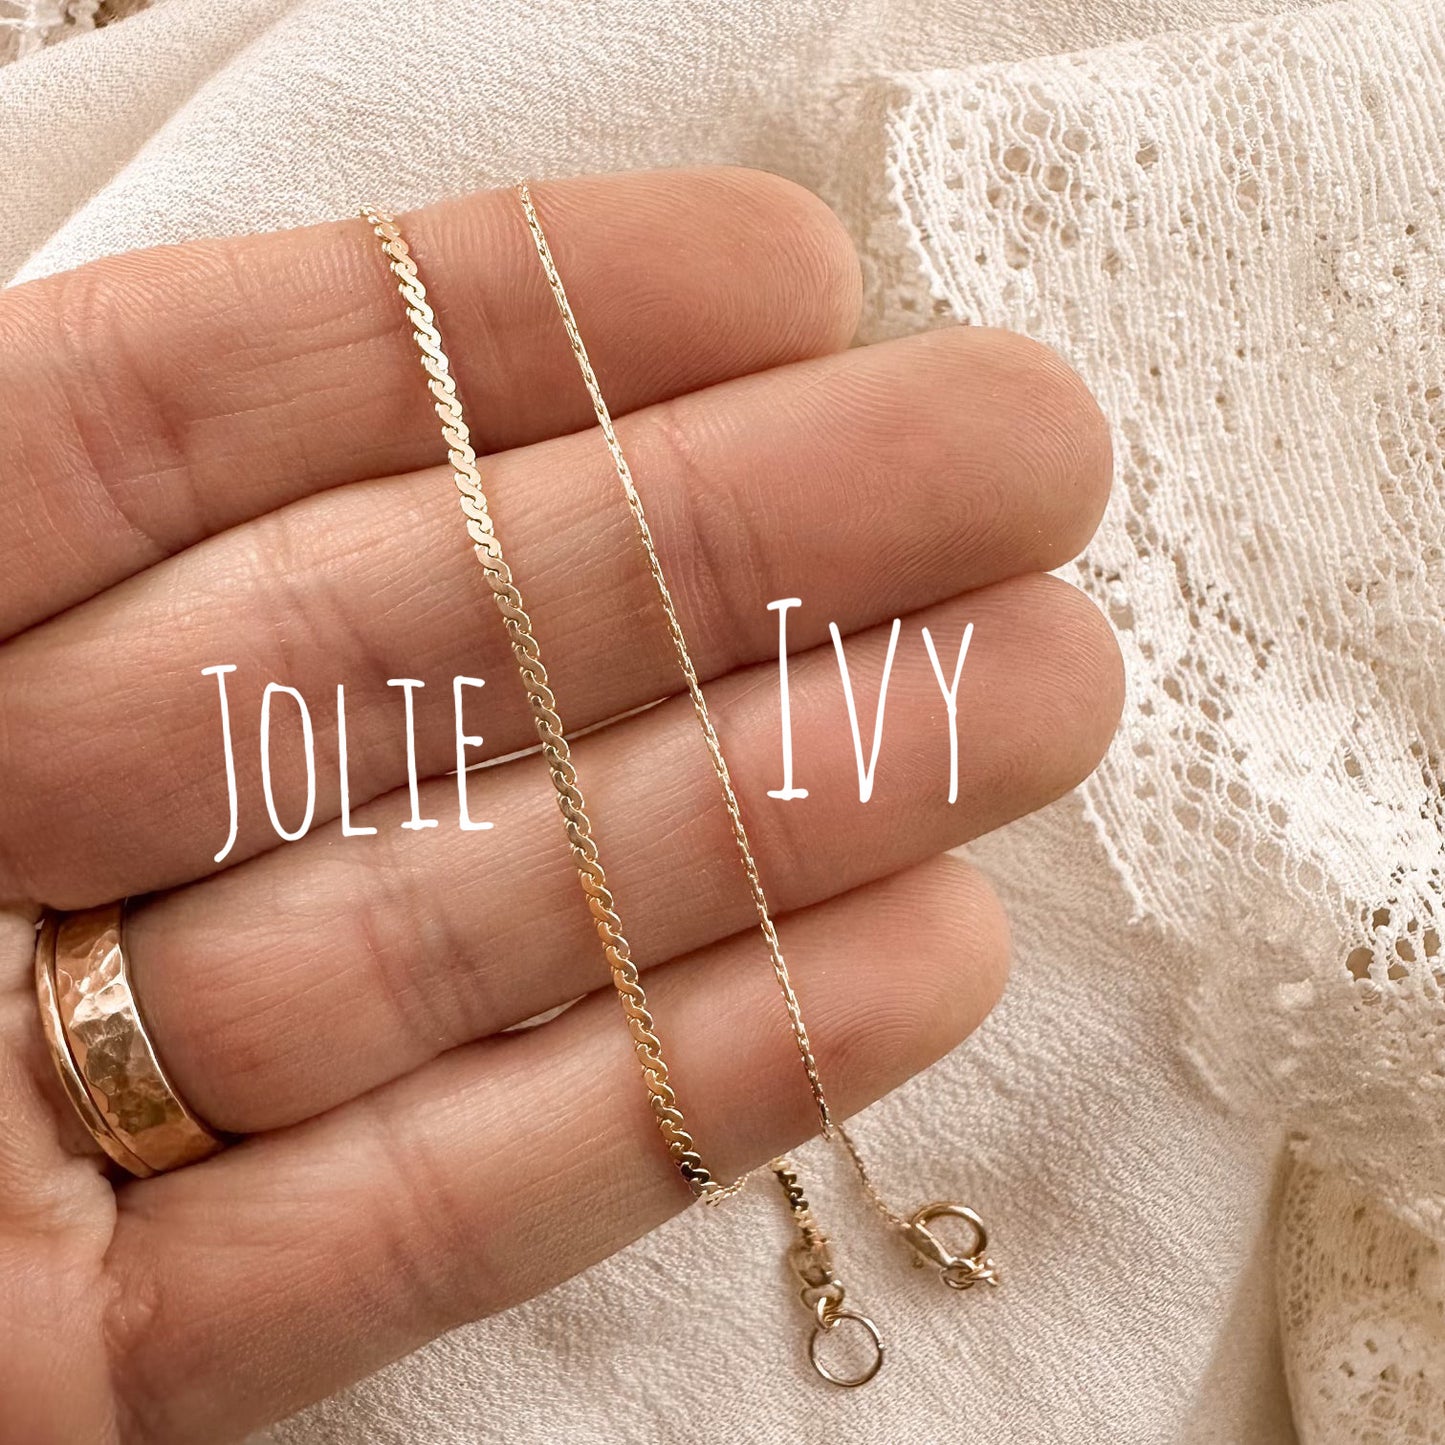 Ivy & Jolie bracelets